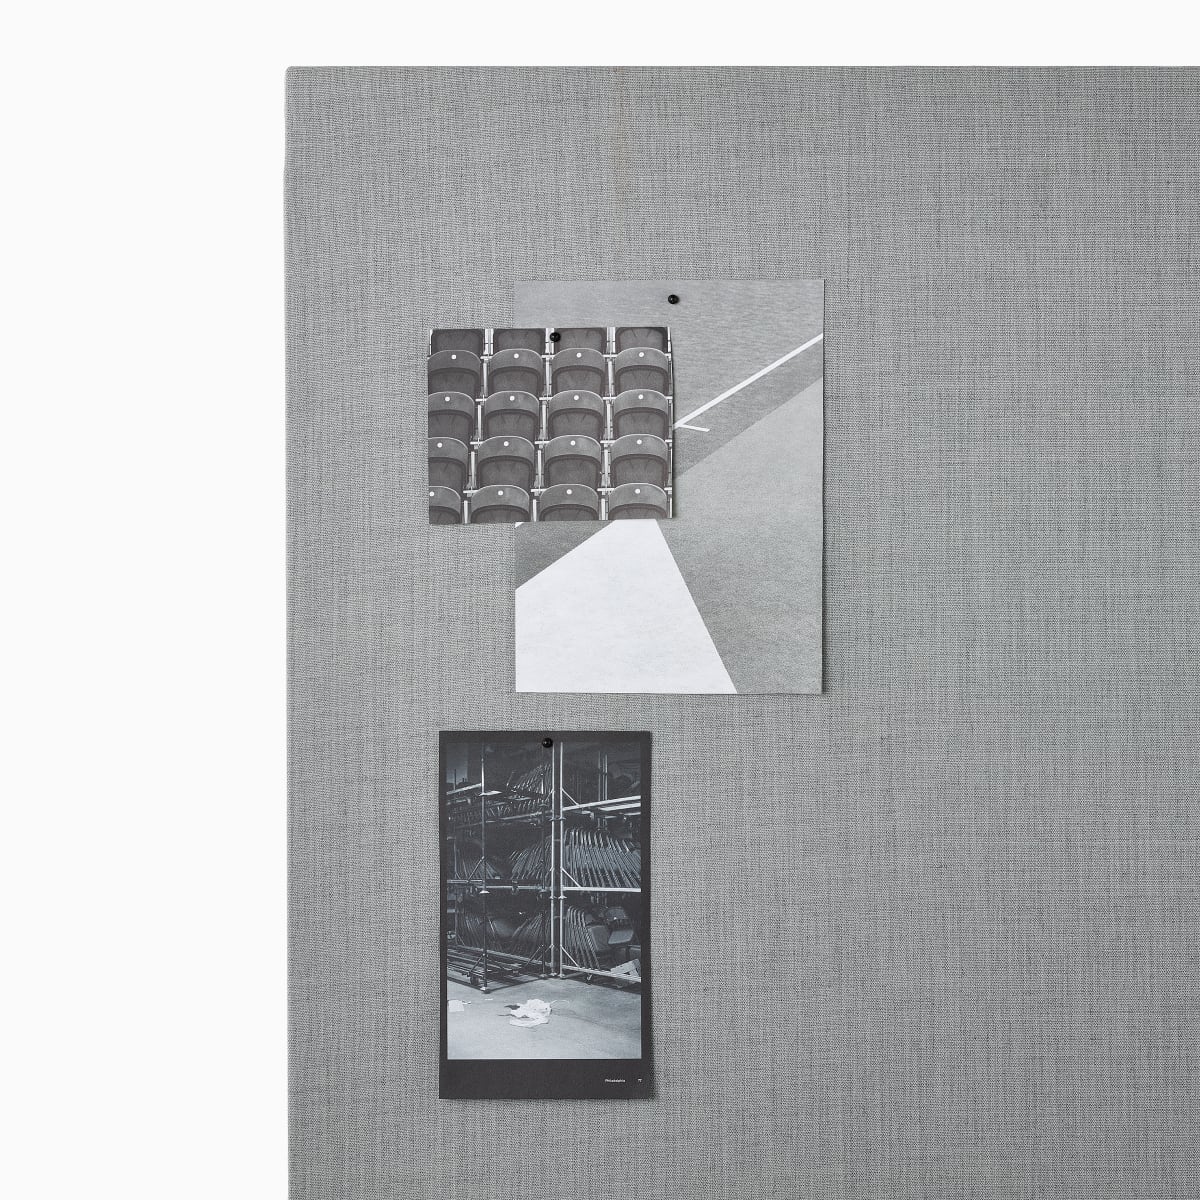 Imagem aproximada de fotos afixadas a um quadro de projeto OE1 em tecido cinza.